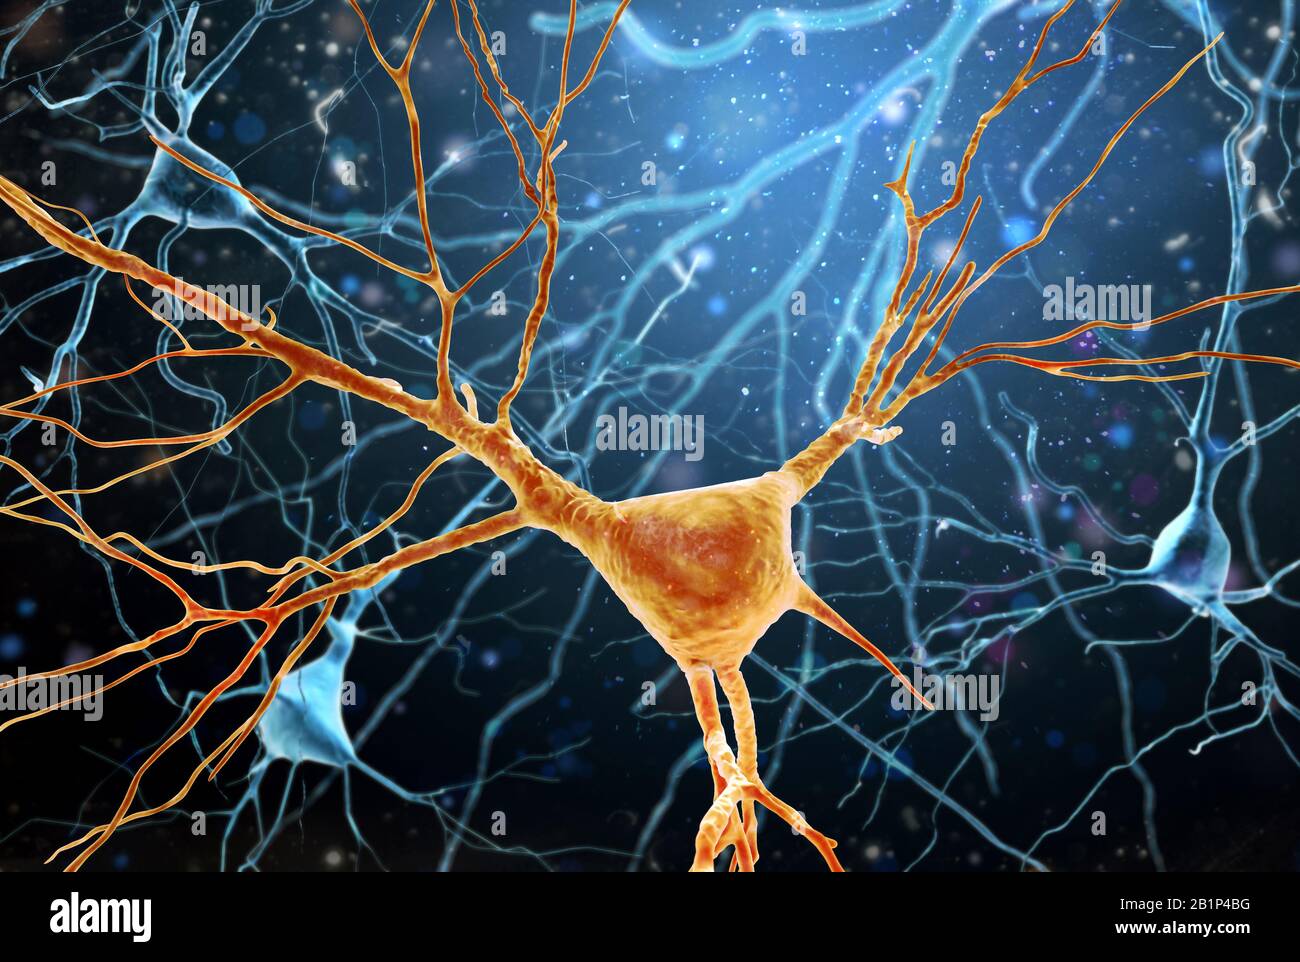 Illustration tridimensionnelle de la structure Des Neurones du cerveau humain. Une haute résolution., illustration tridimensionnelle de La structure des Neurones du cerveau humain. Haute résolution. Banque D'Images